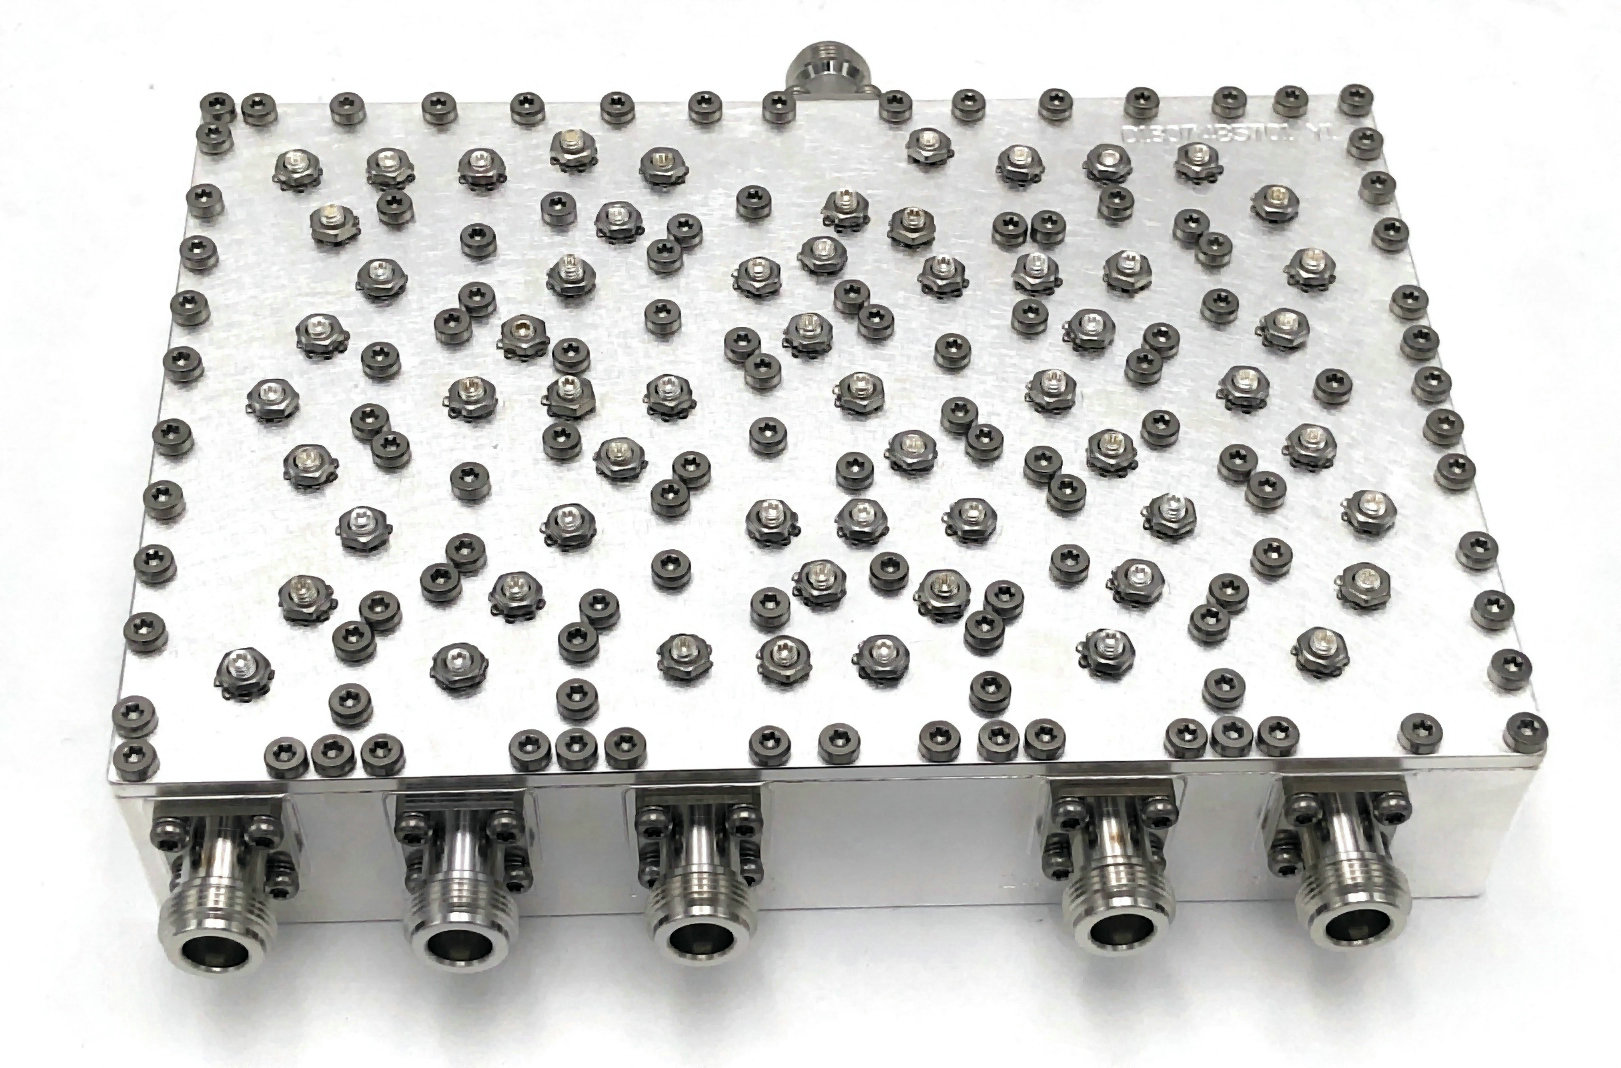 کانکتور NF کمباینر حفره 5 راه 824-2570 مگاهرتز با افت درج کم حجم کوچک JX-CC5-824M2570M-90N